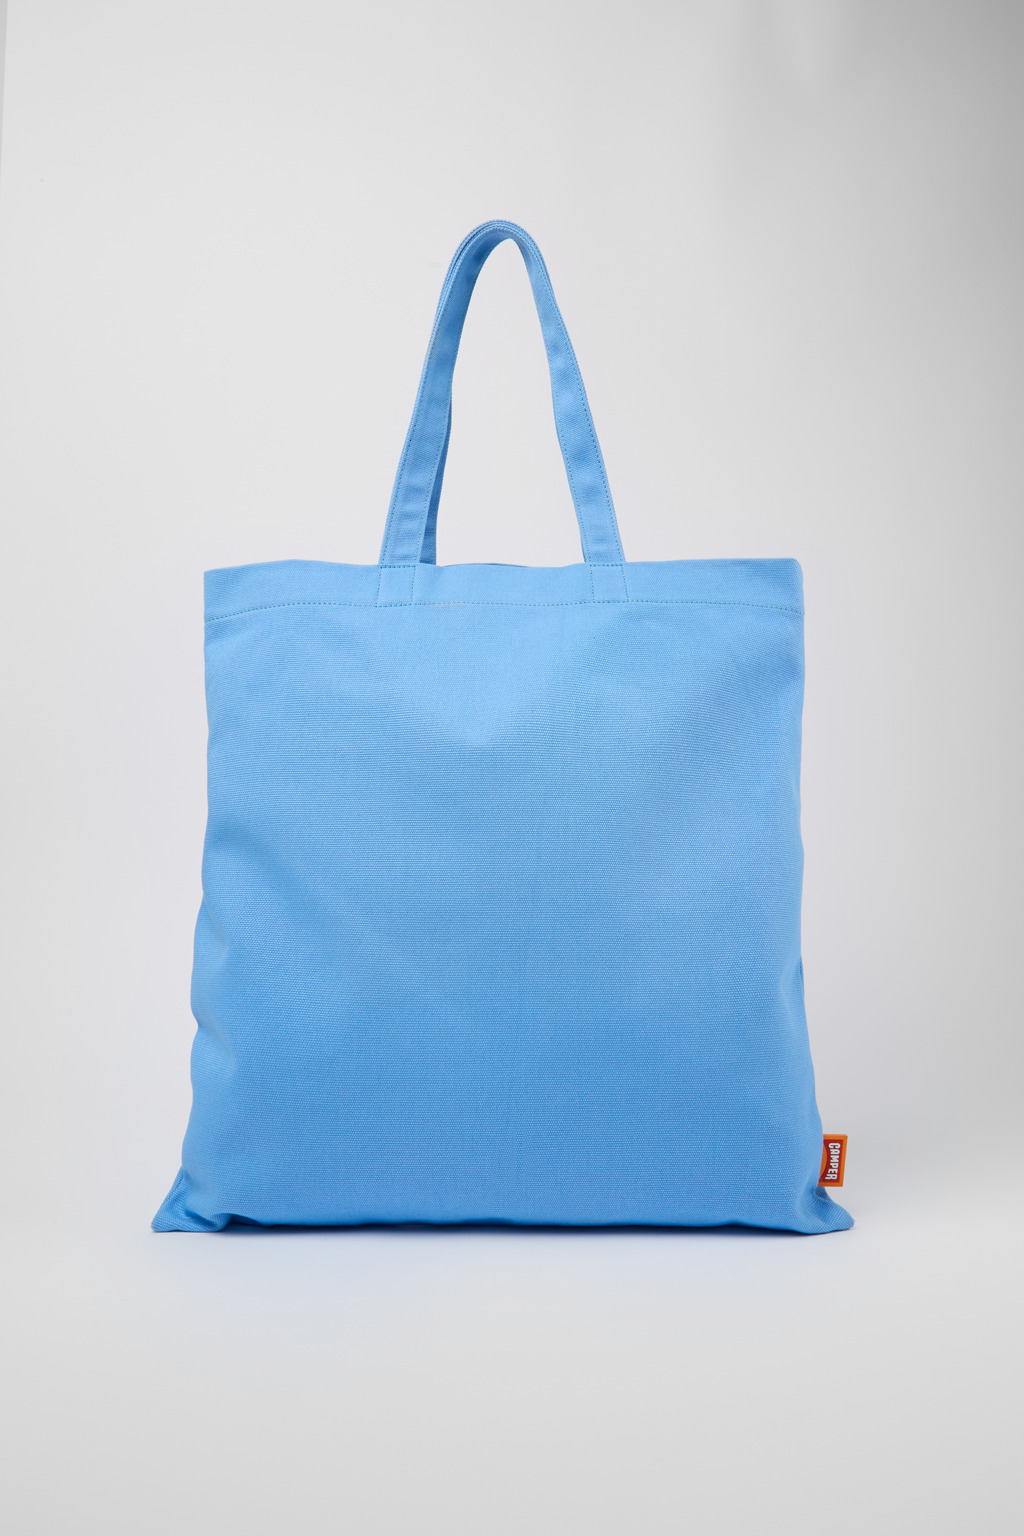 ConMigo Blue, orange, and black tote bag